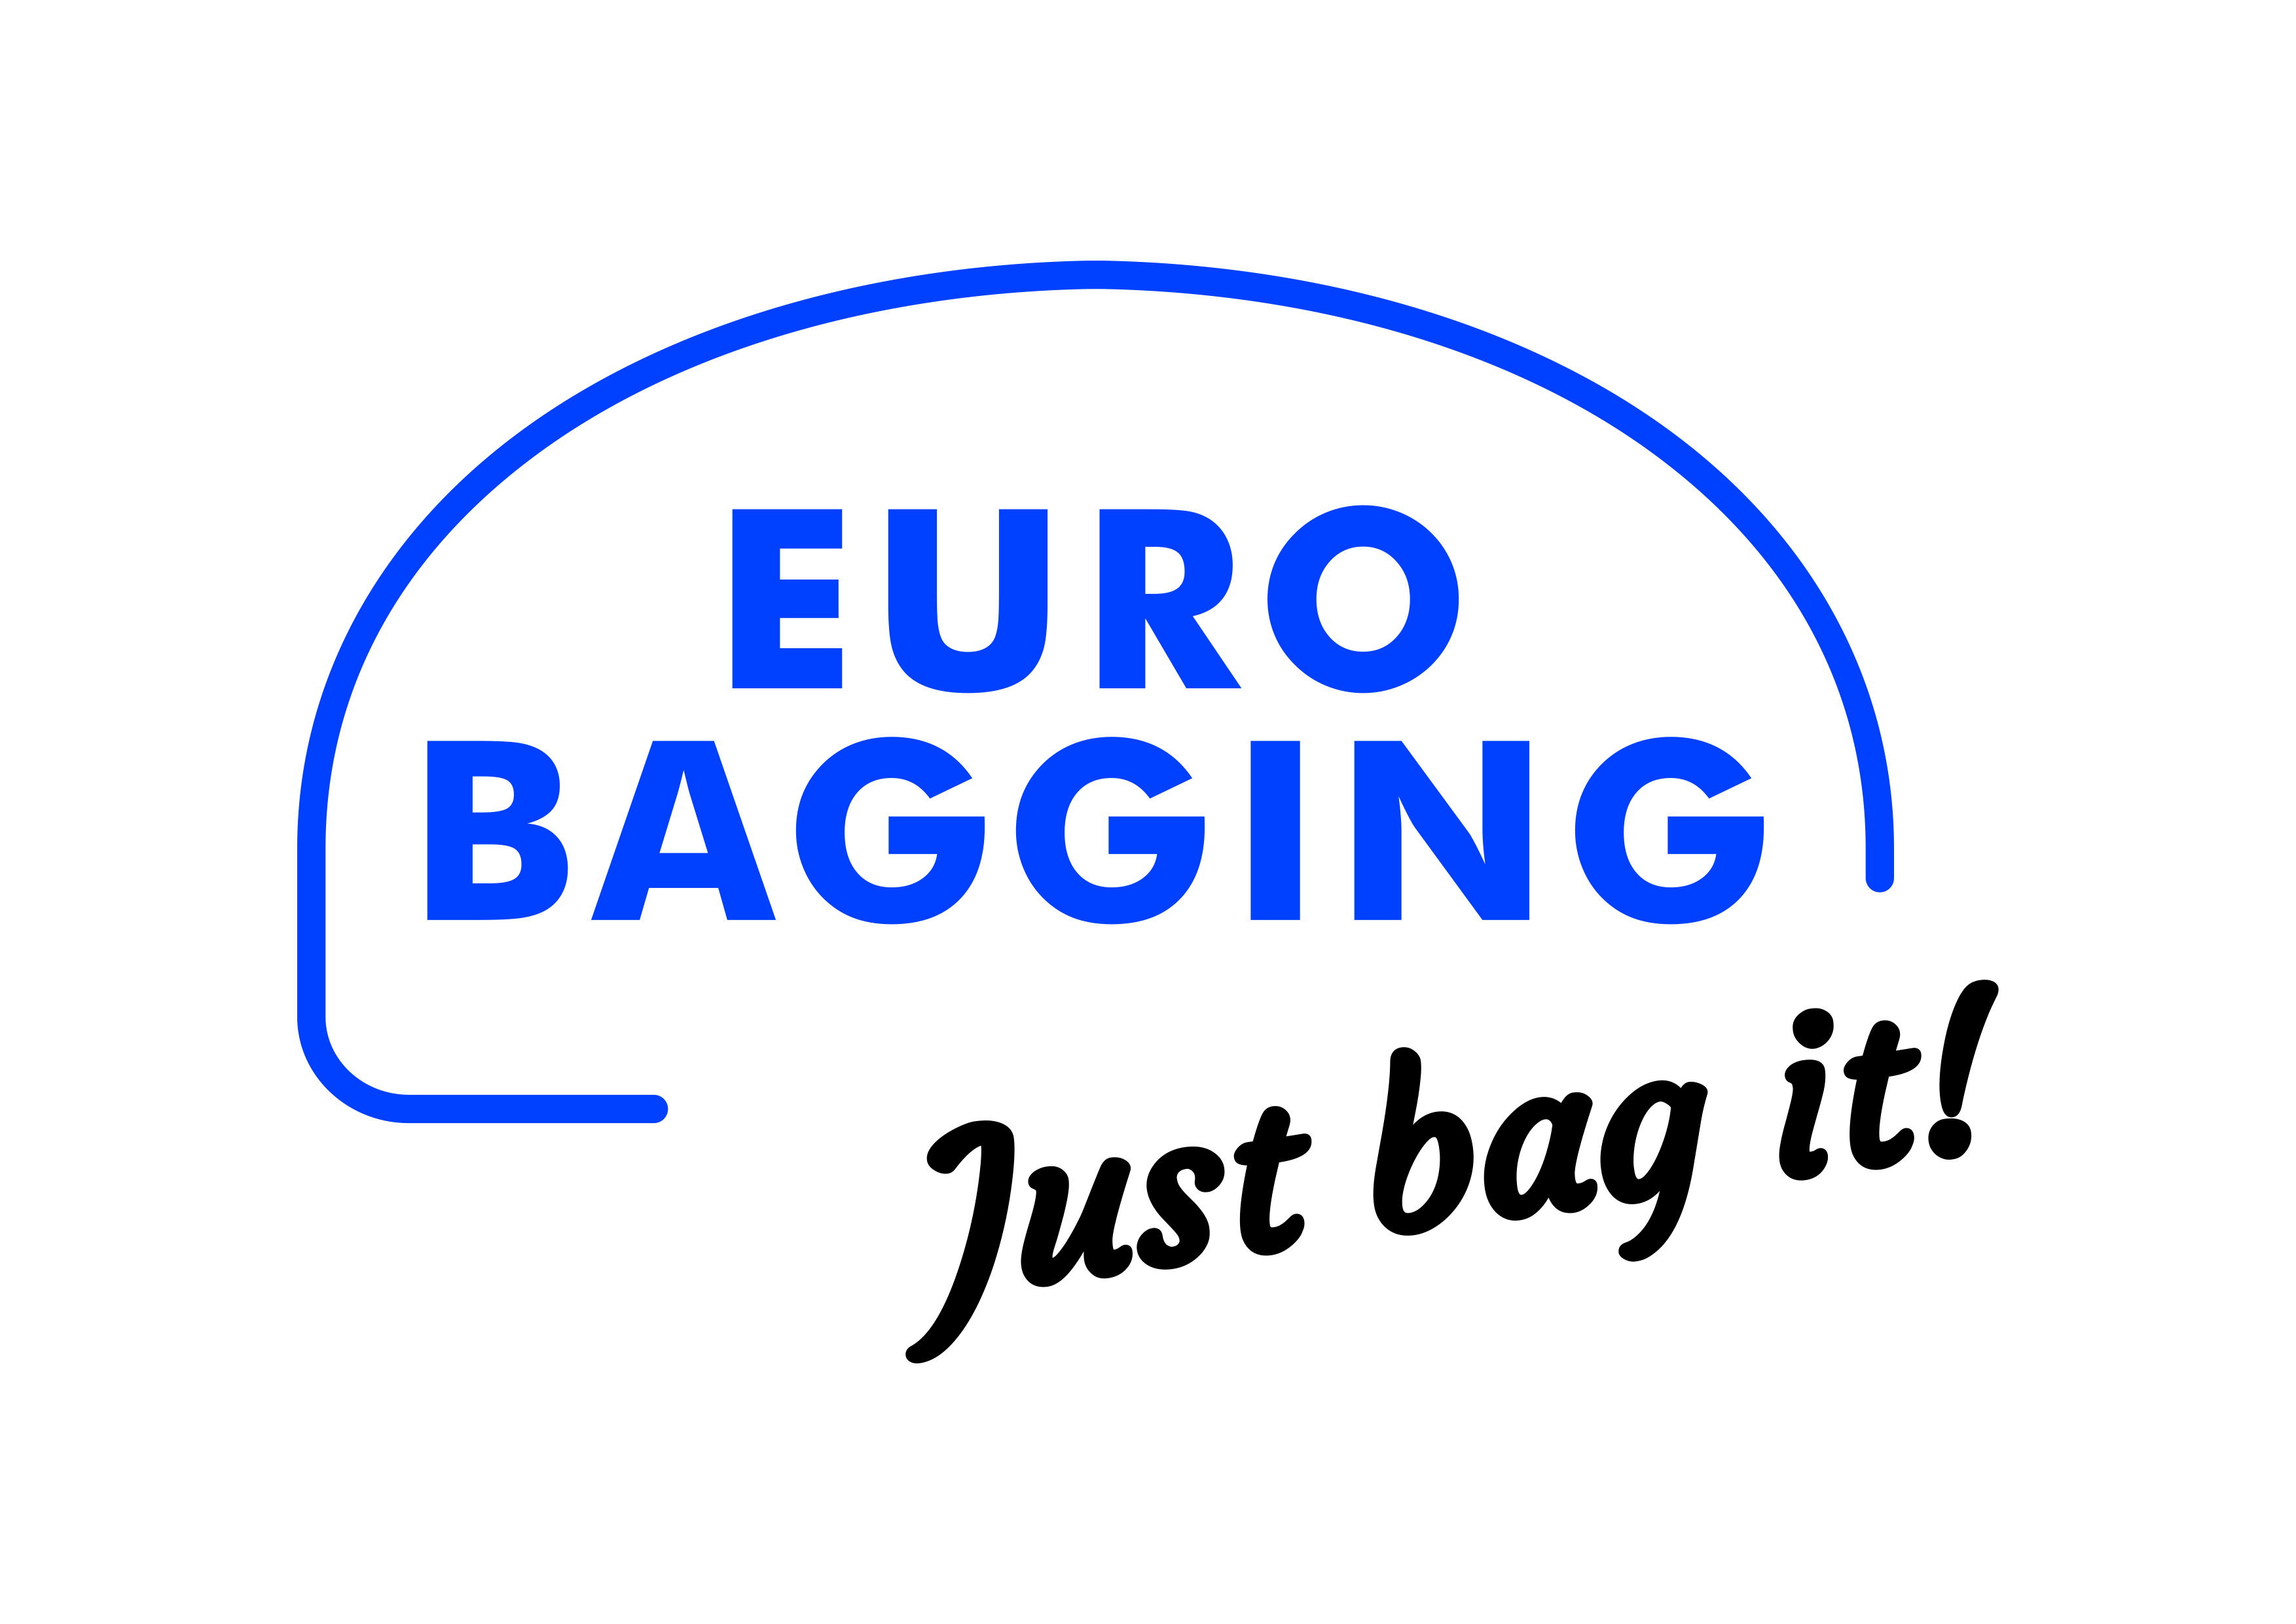 EURO BAGGING